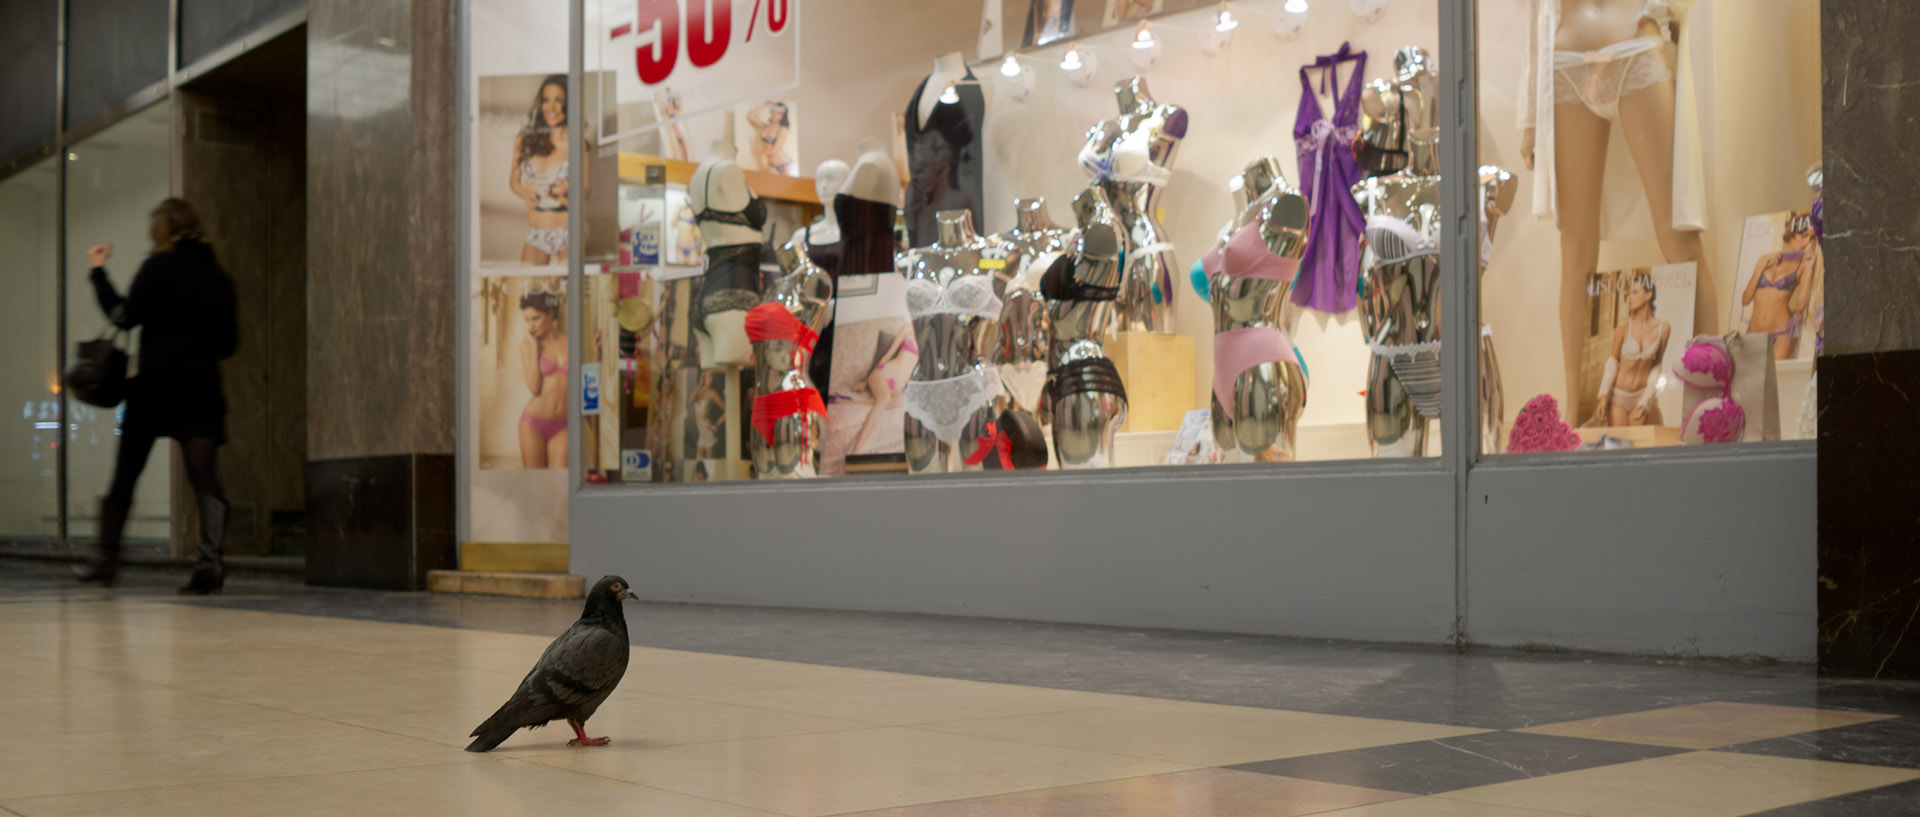 Pigeon devant une boutique de lingerie, galerie des Champs Elysées, à Paris.